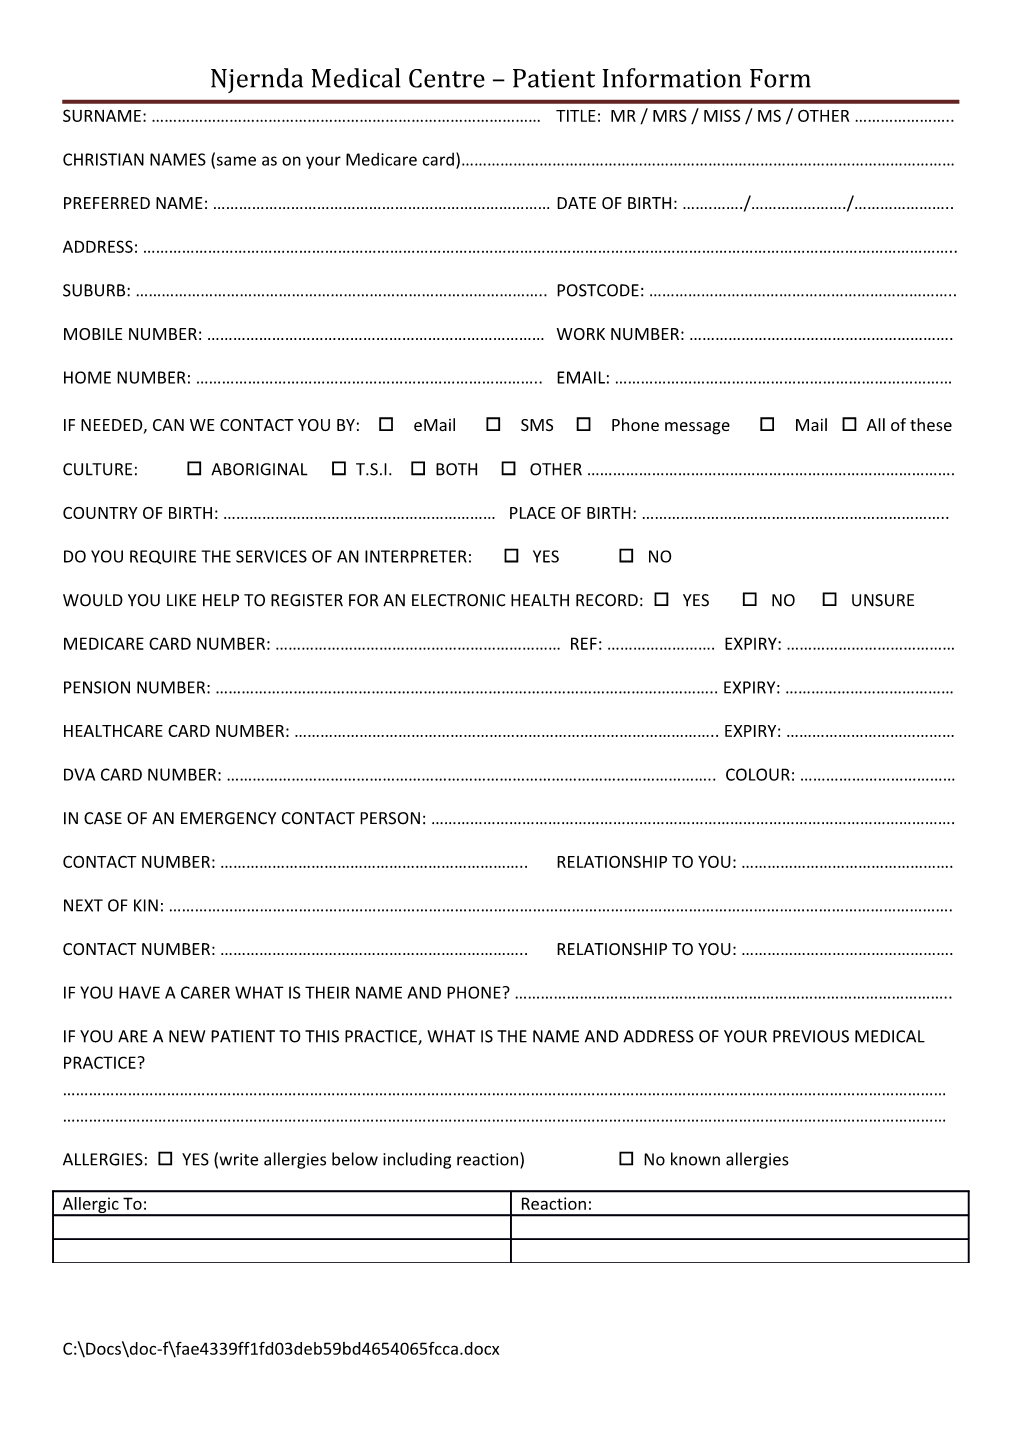 Njernda Medical Centre Patient Information Form